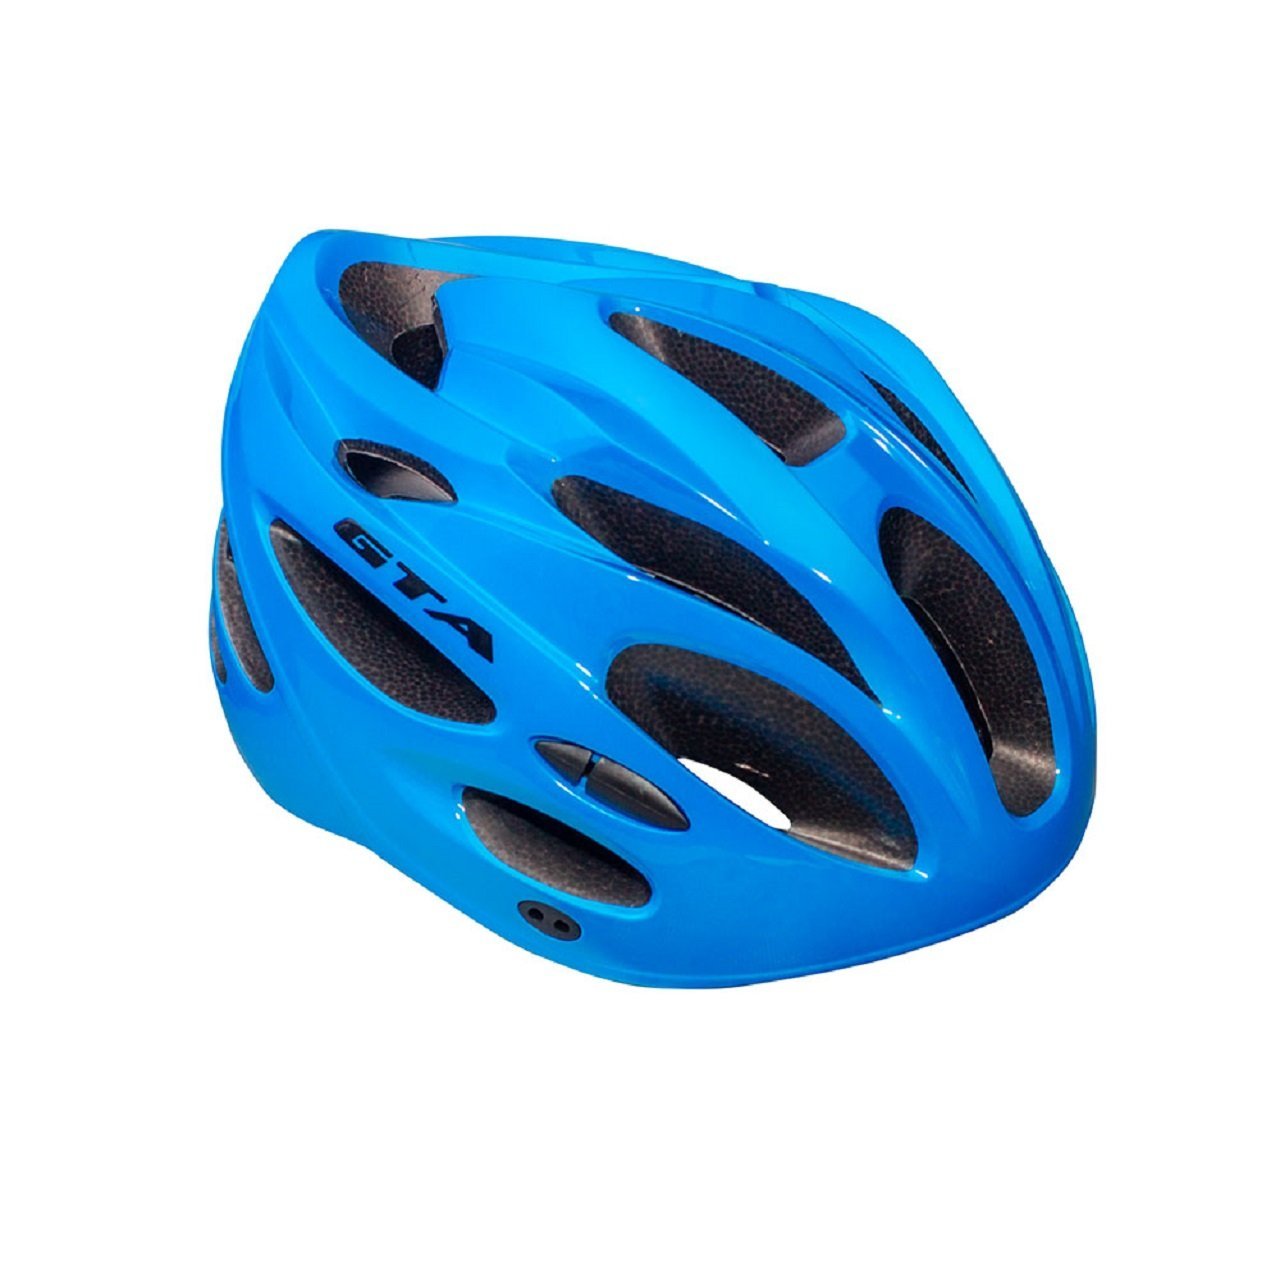 Capacete Ciclismo Mtb 20 Entradas De Ar Com Led Azul Gta:Azul/M 54-58Cm